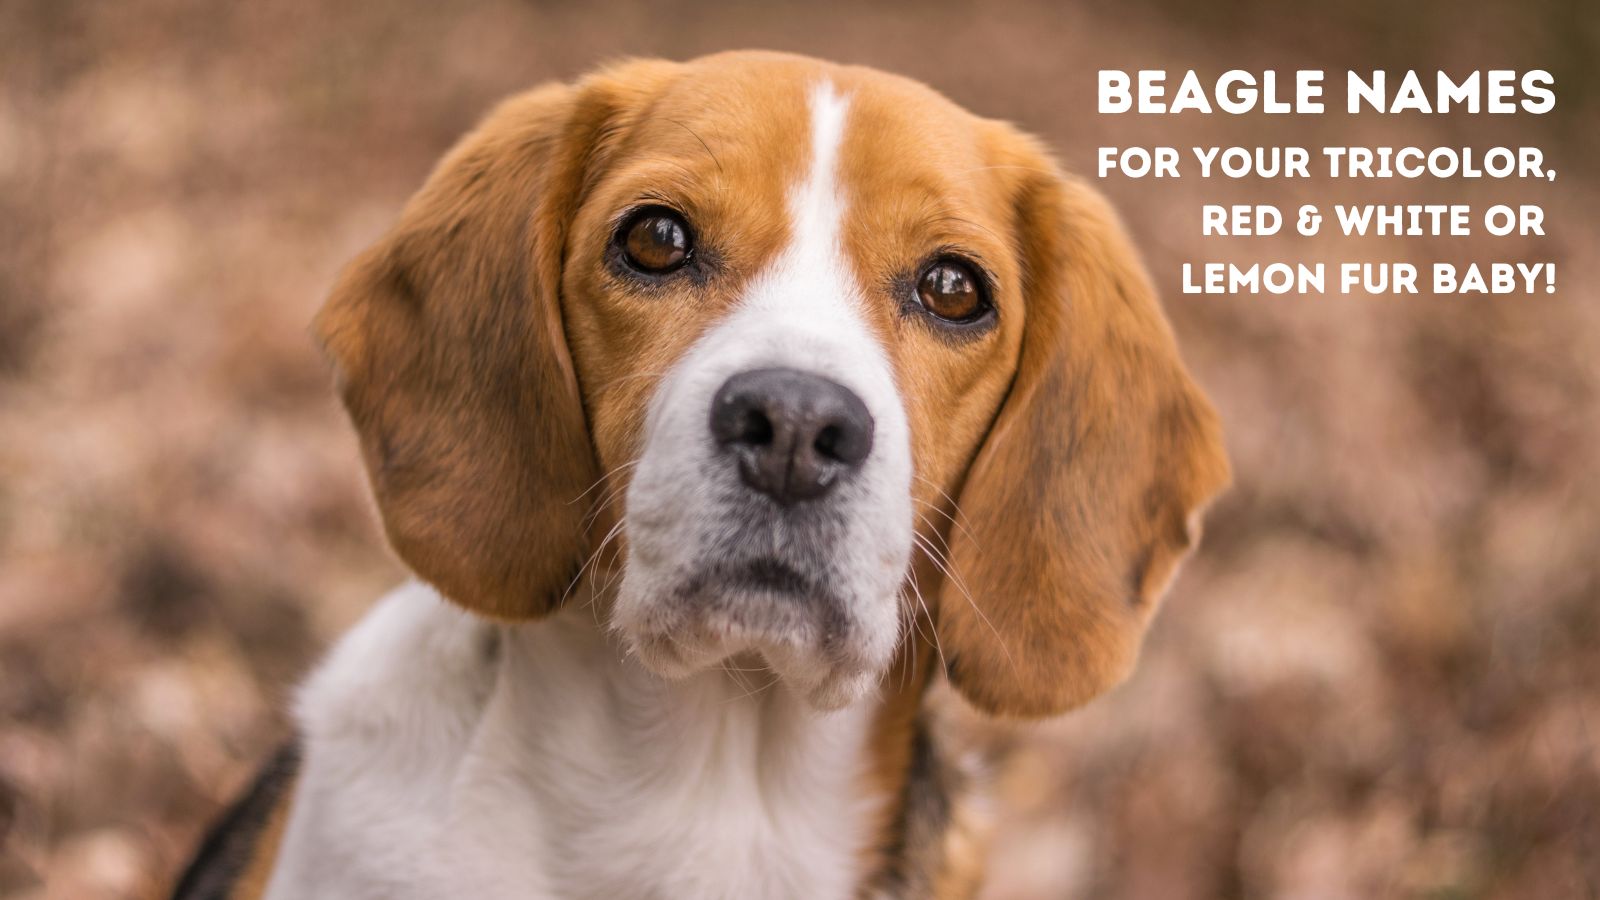 Nombres creativos de Beagle: desde nombres inspirados en la película Beagles hasta nombres que se remontan a los orígenes del Beagle.